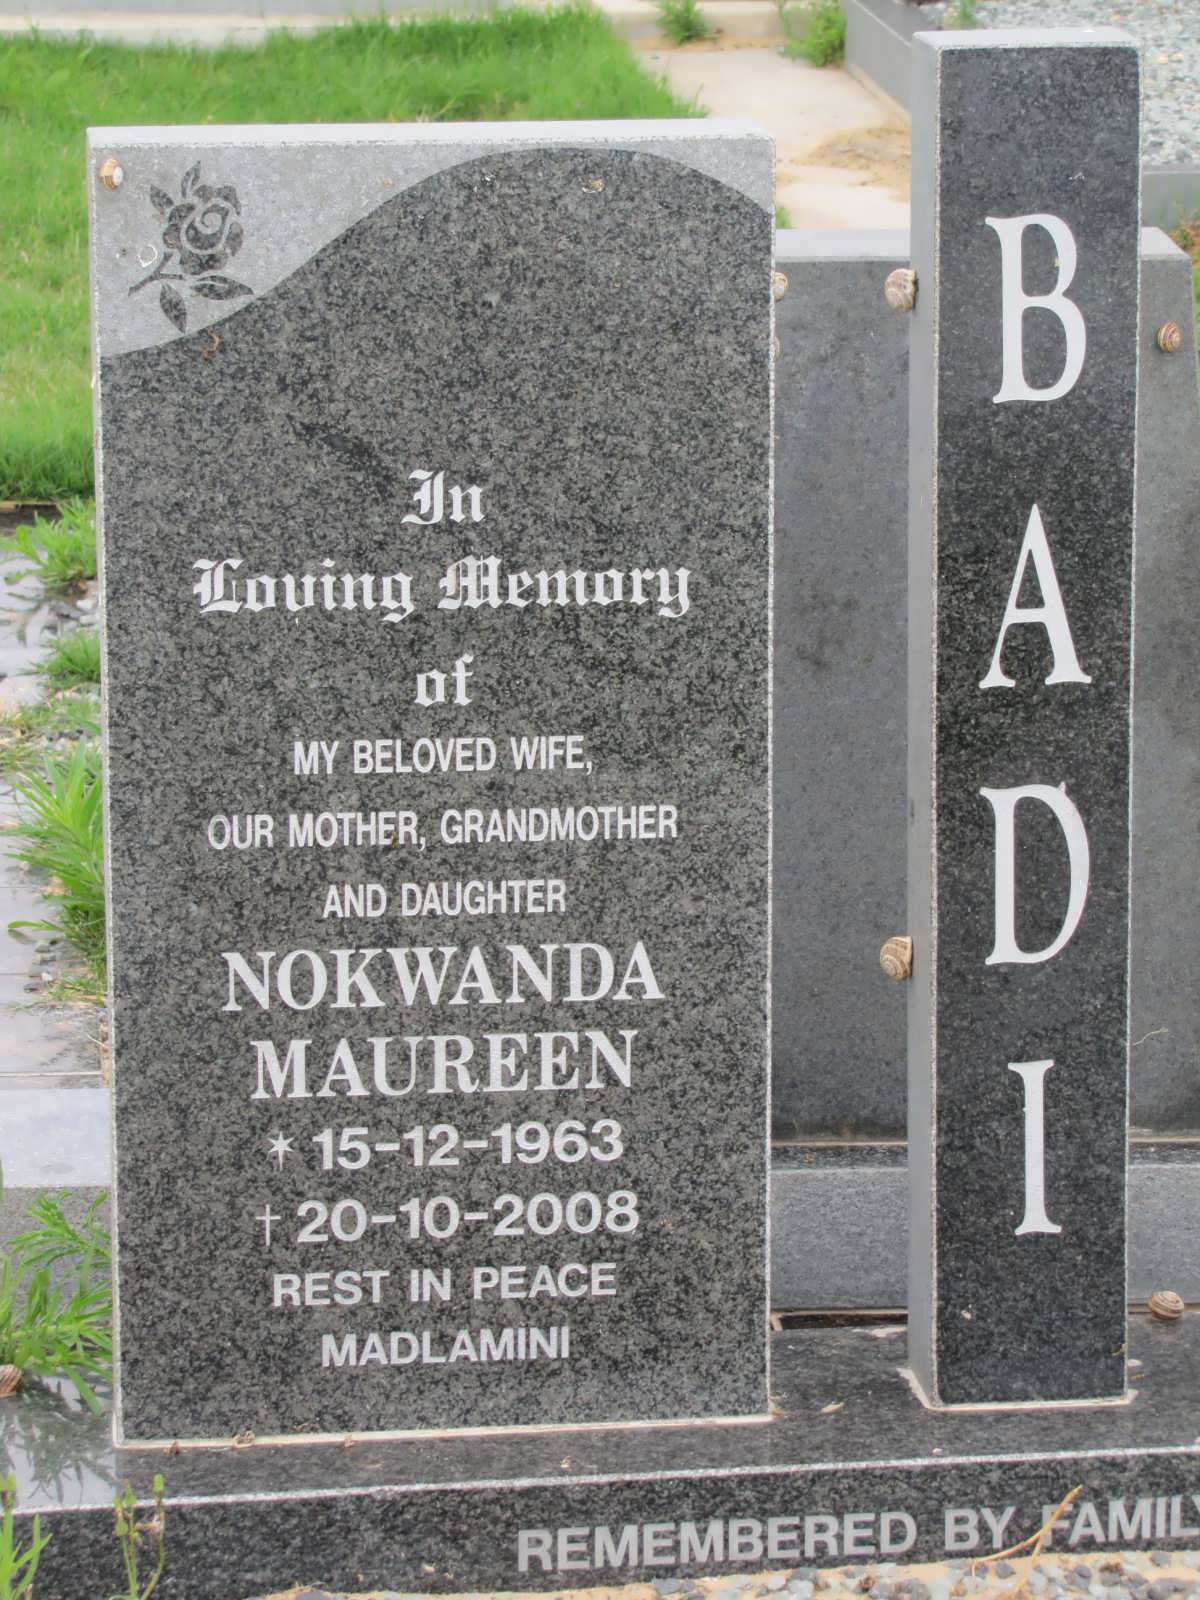 BADI Nokwanda Maureen 1963-2008